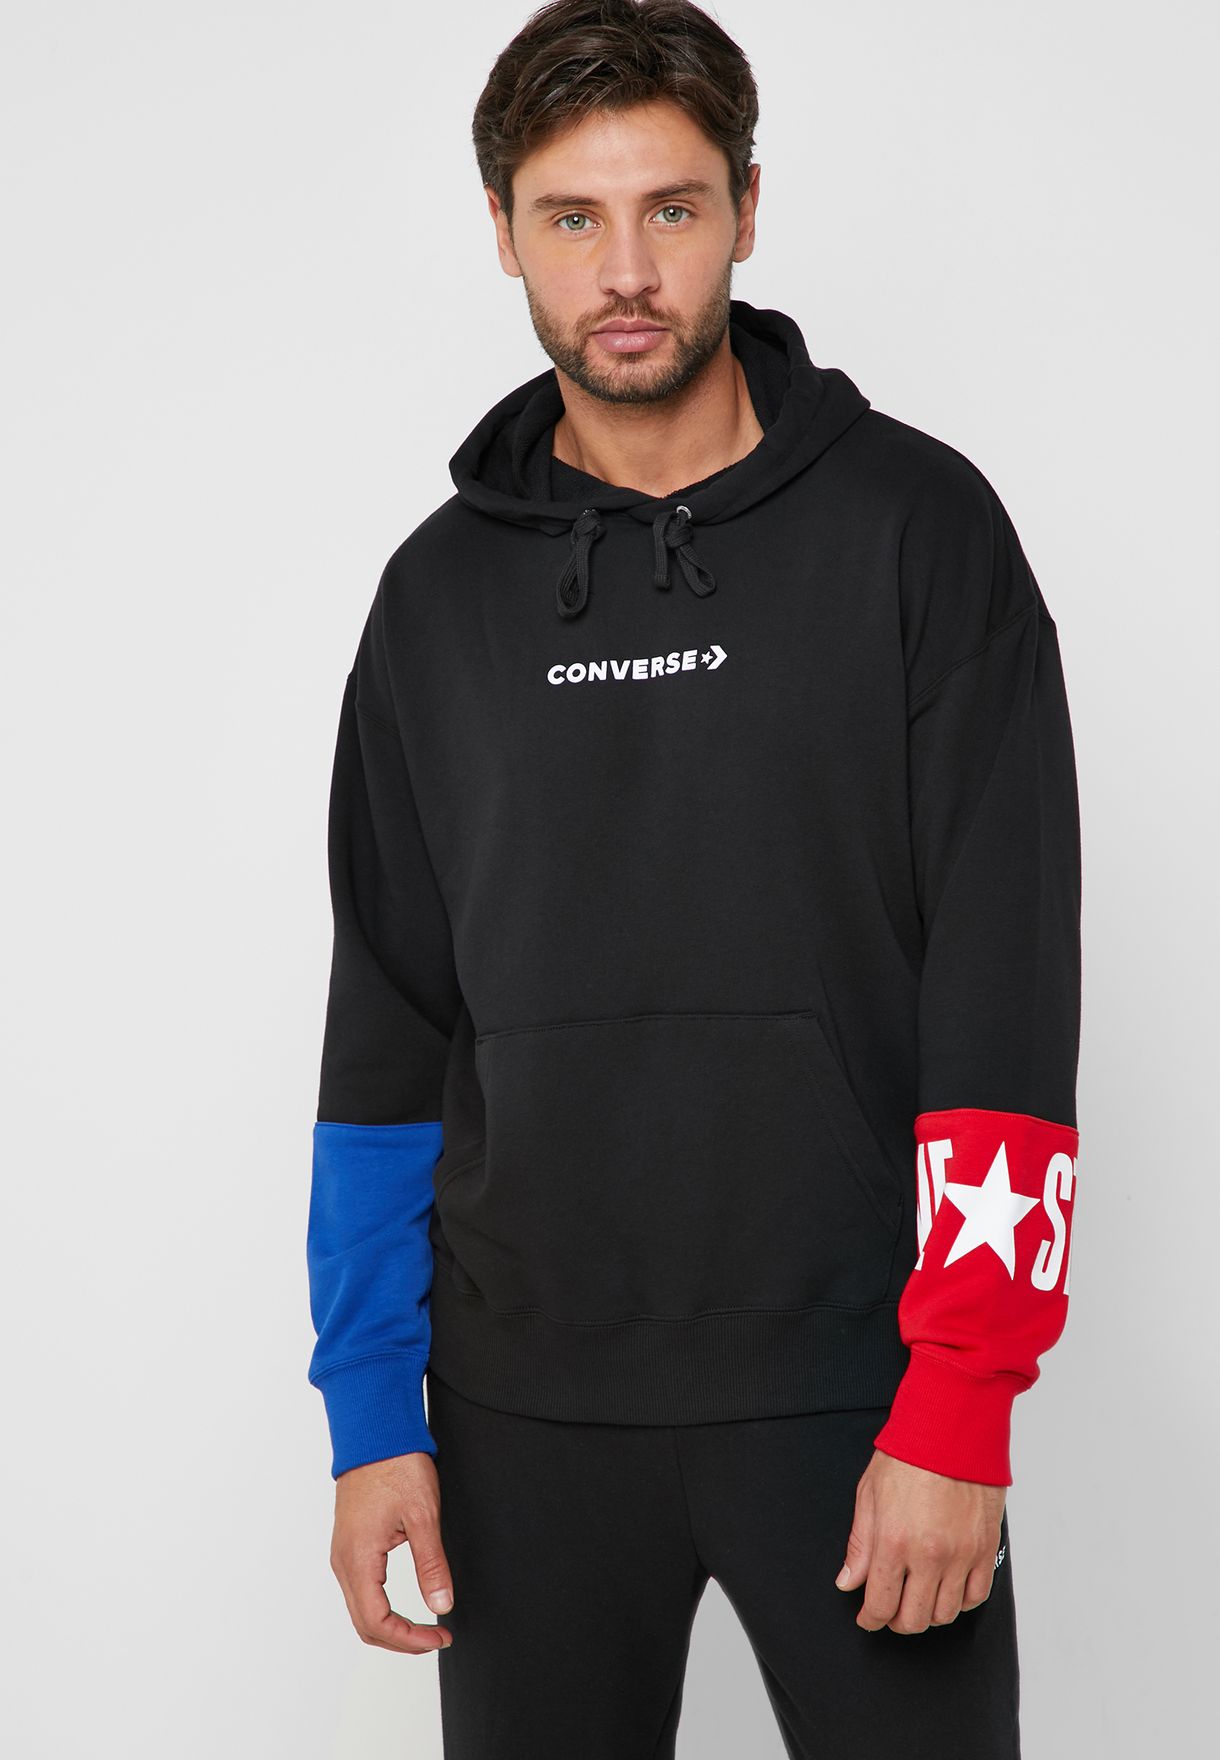 converse one star hoodie